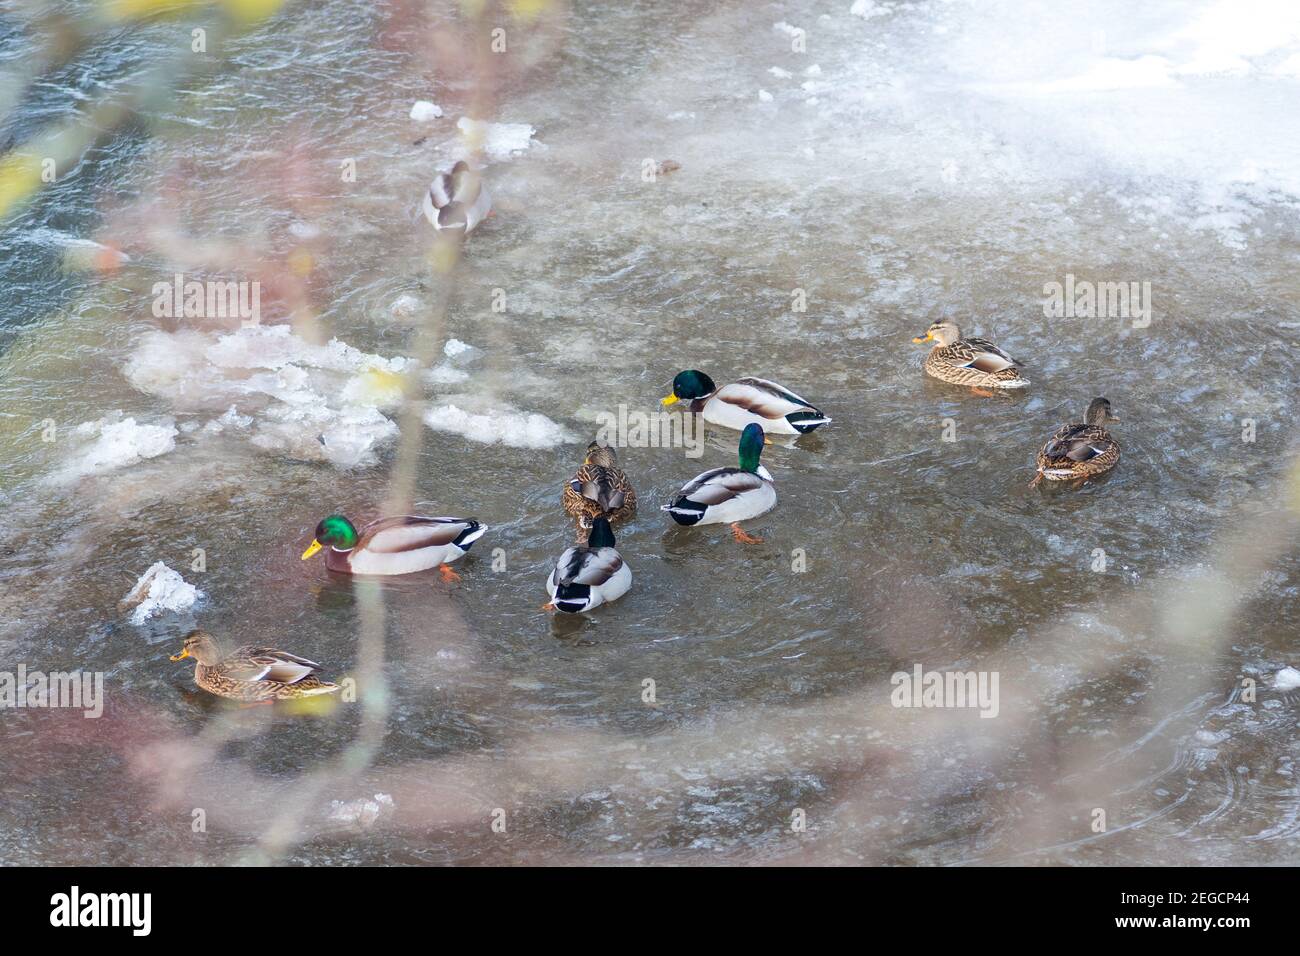 Anatre in un fiume ghiacciato in inverno, neve e ghiaccio che si fondono, ruscello fluente, sfondo della natura Foto Stock